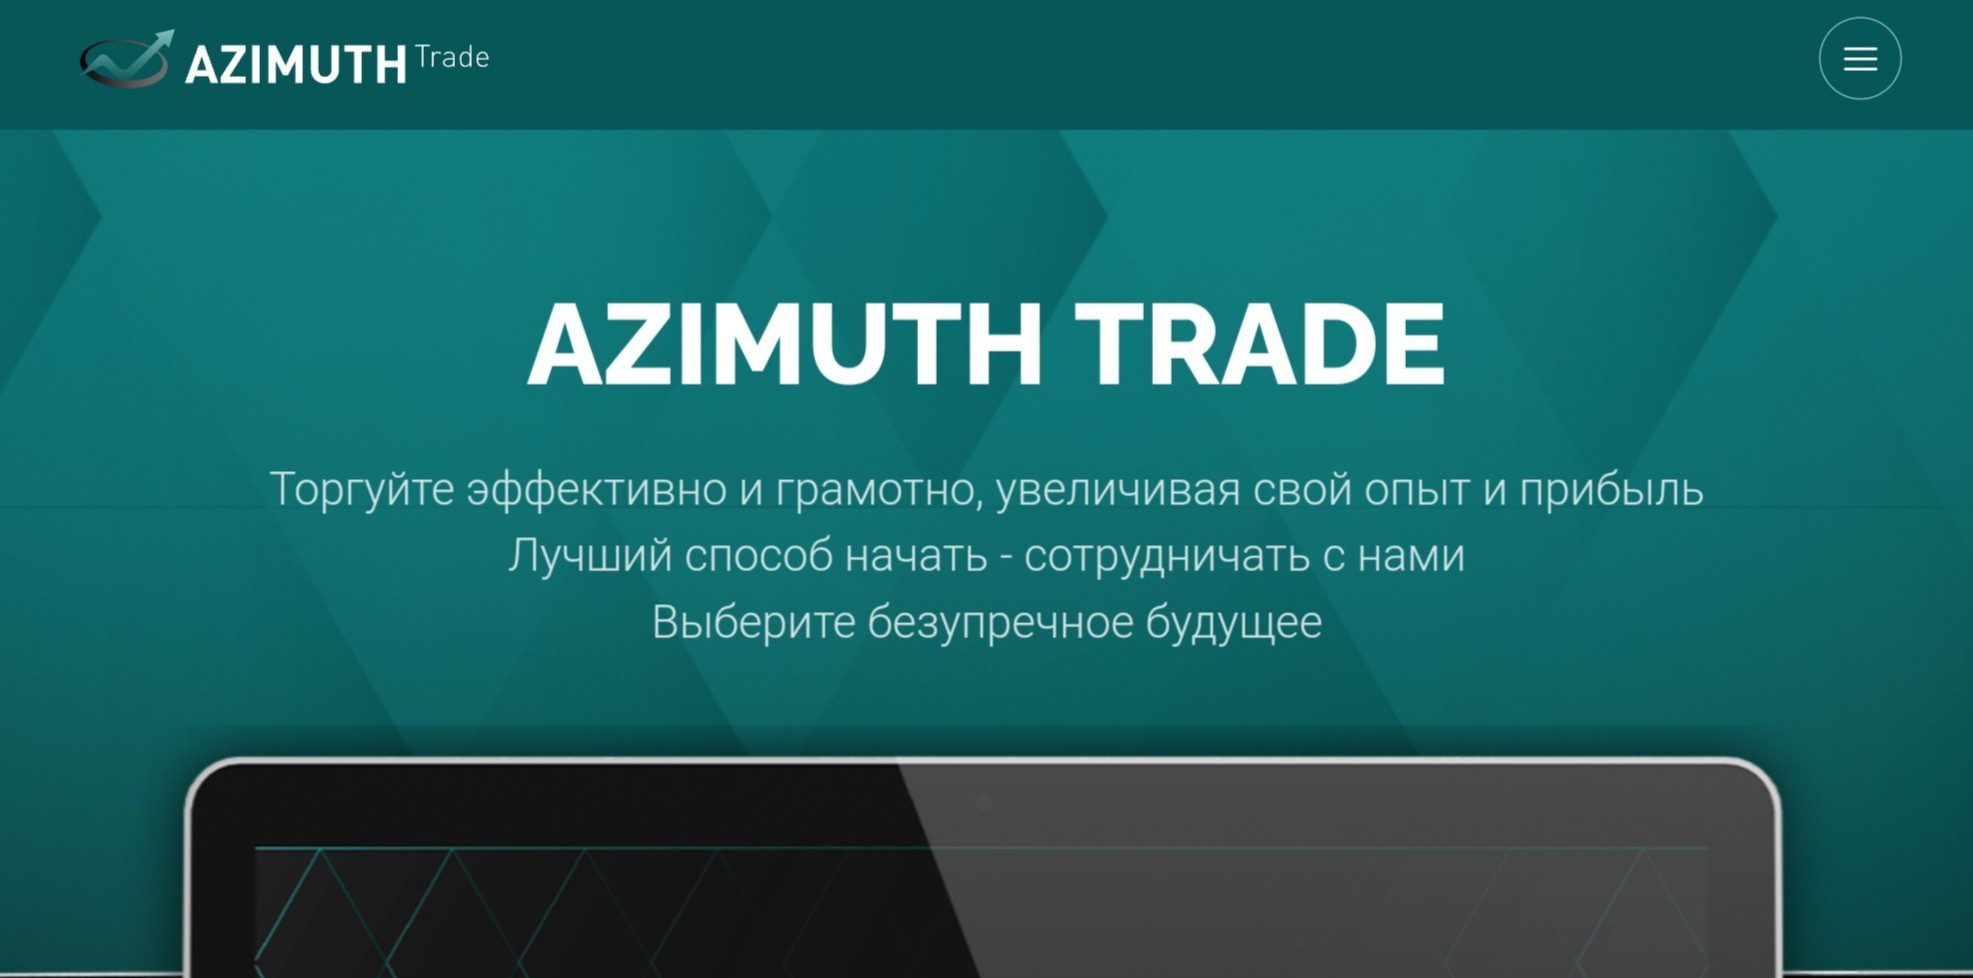 Сайт Azimuth Trade броке